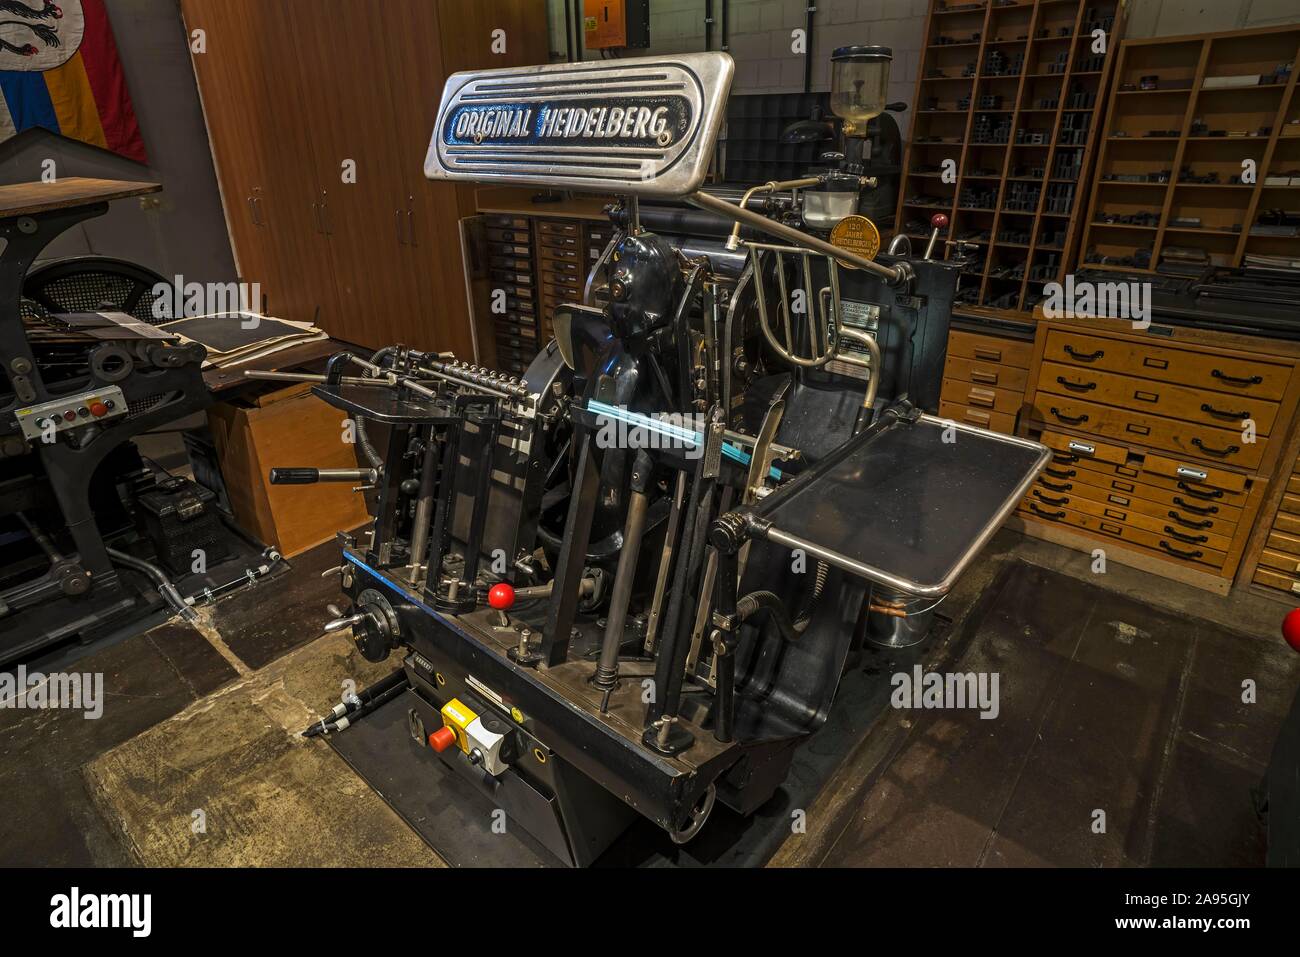 Máquina de impresión Heidelberg históricos originales desde 1950, el Museo de la cultura industrial, Nuremberg, Middle Franconia, Baviera, Alemania Foto de stock